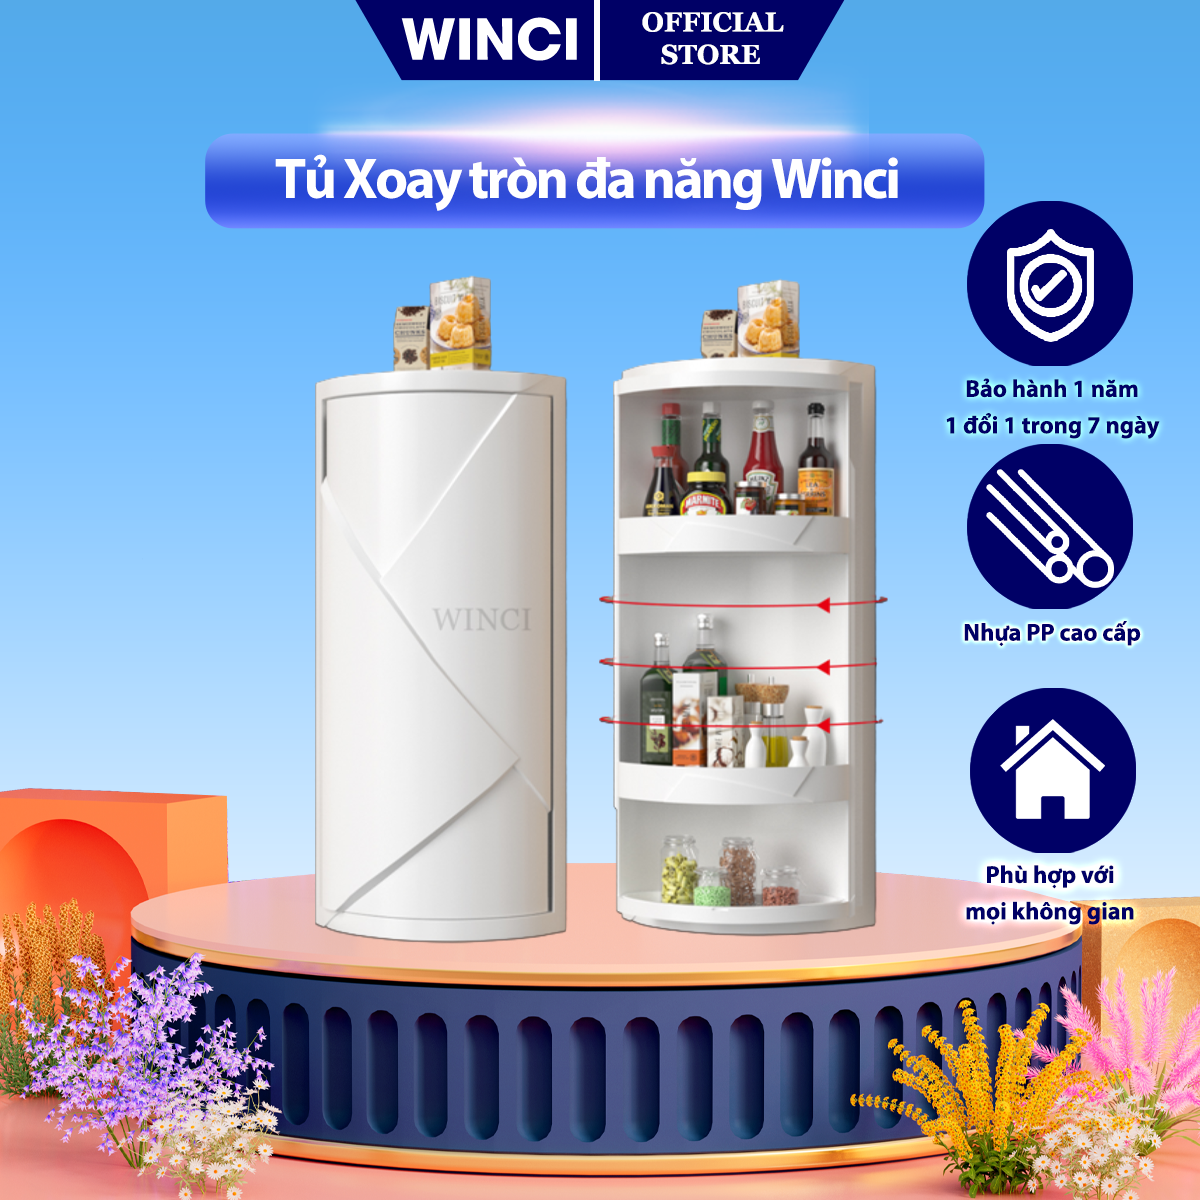 Tủ xoay thông minh Winci, đựng đồ phòng ngủ, phòng khách, Nhà Bếp, Chất liệu nhựa PP bền bỉ, WIN-A29